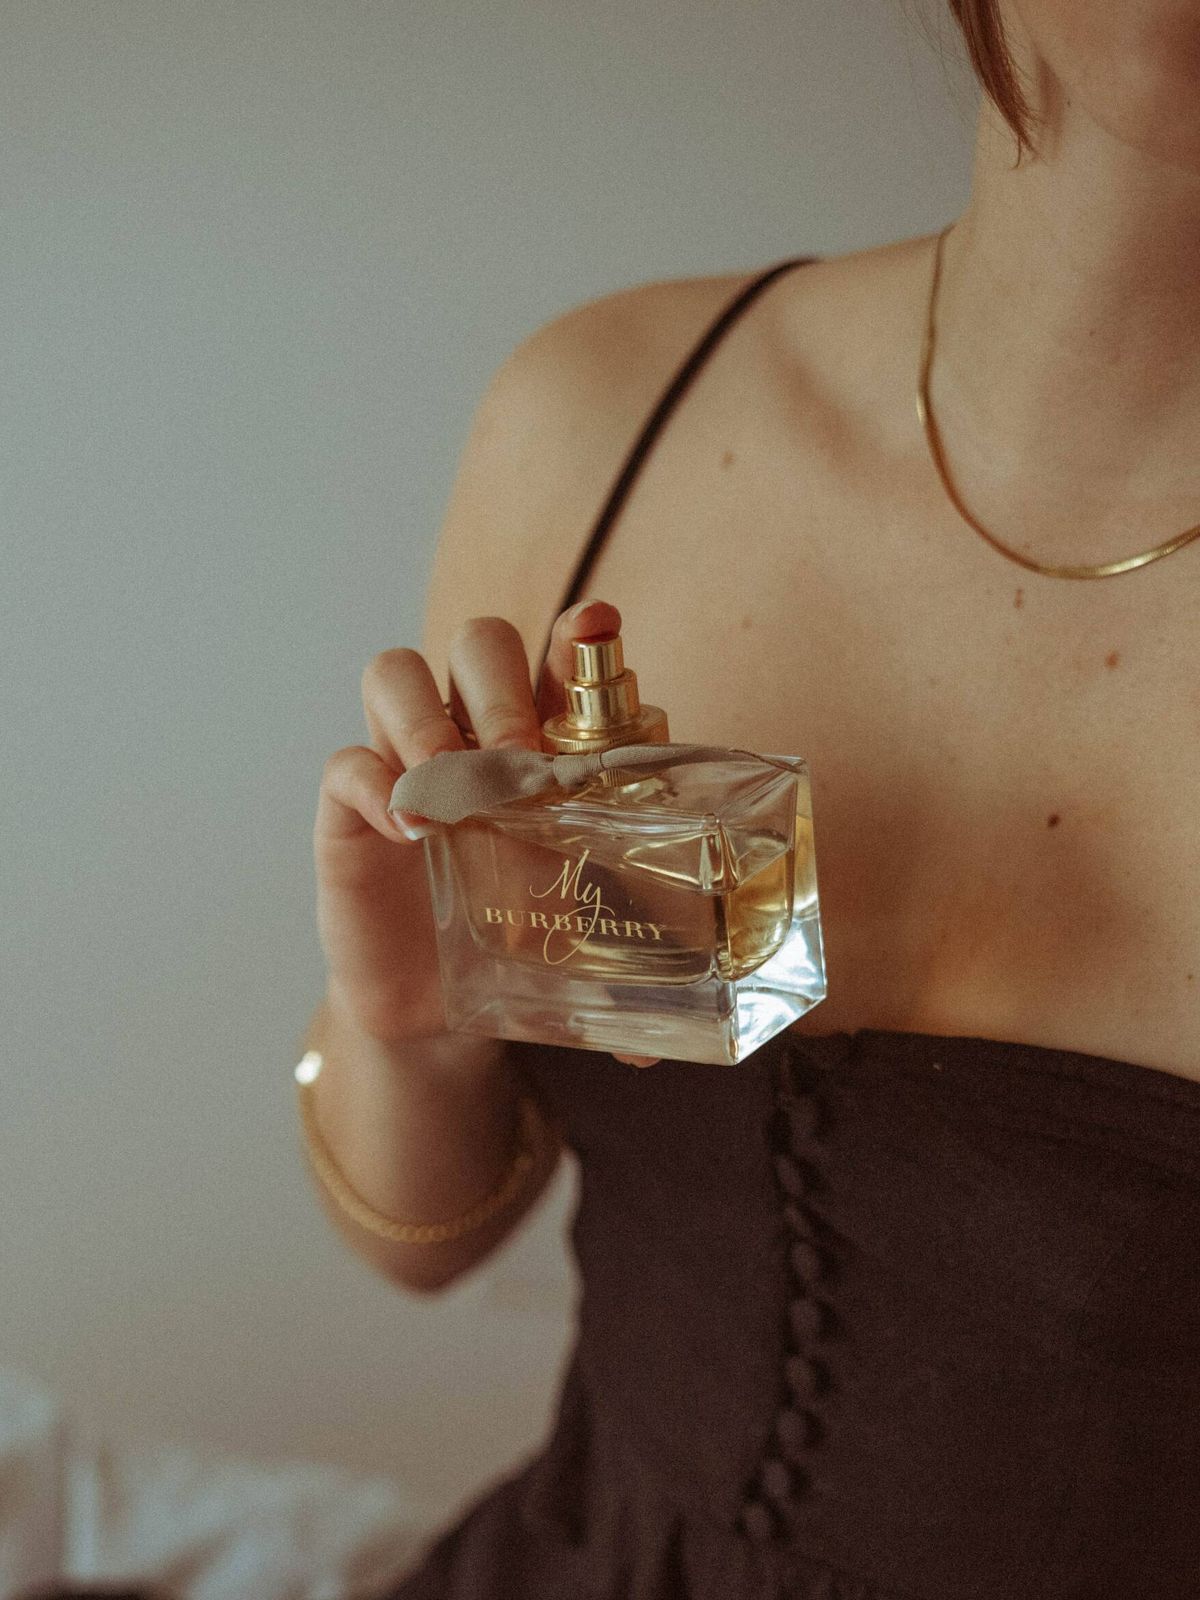 El layering permite crear un perfume personal superponiendo capas aromáticas. (Unsplash)